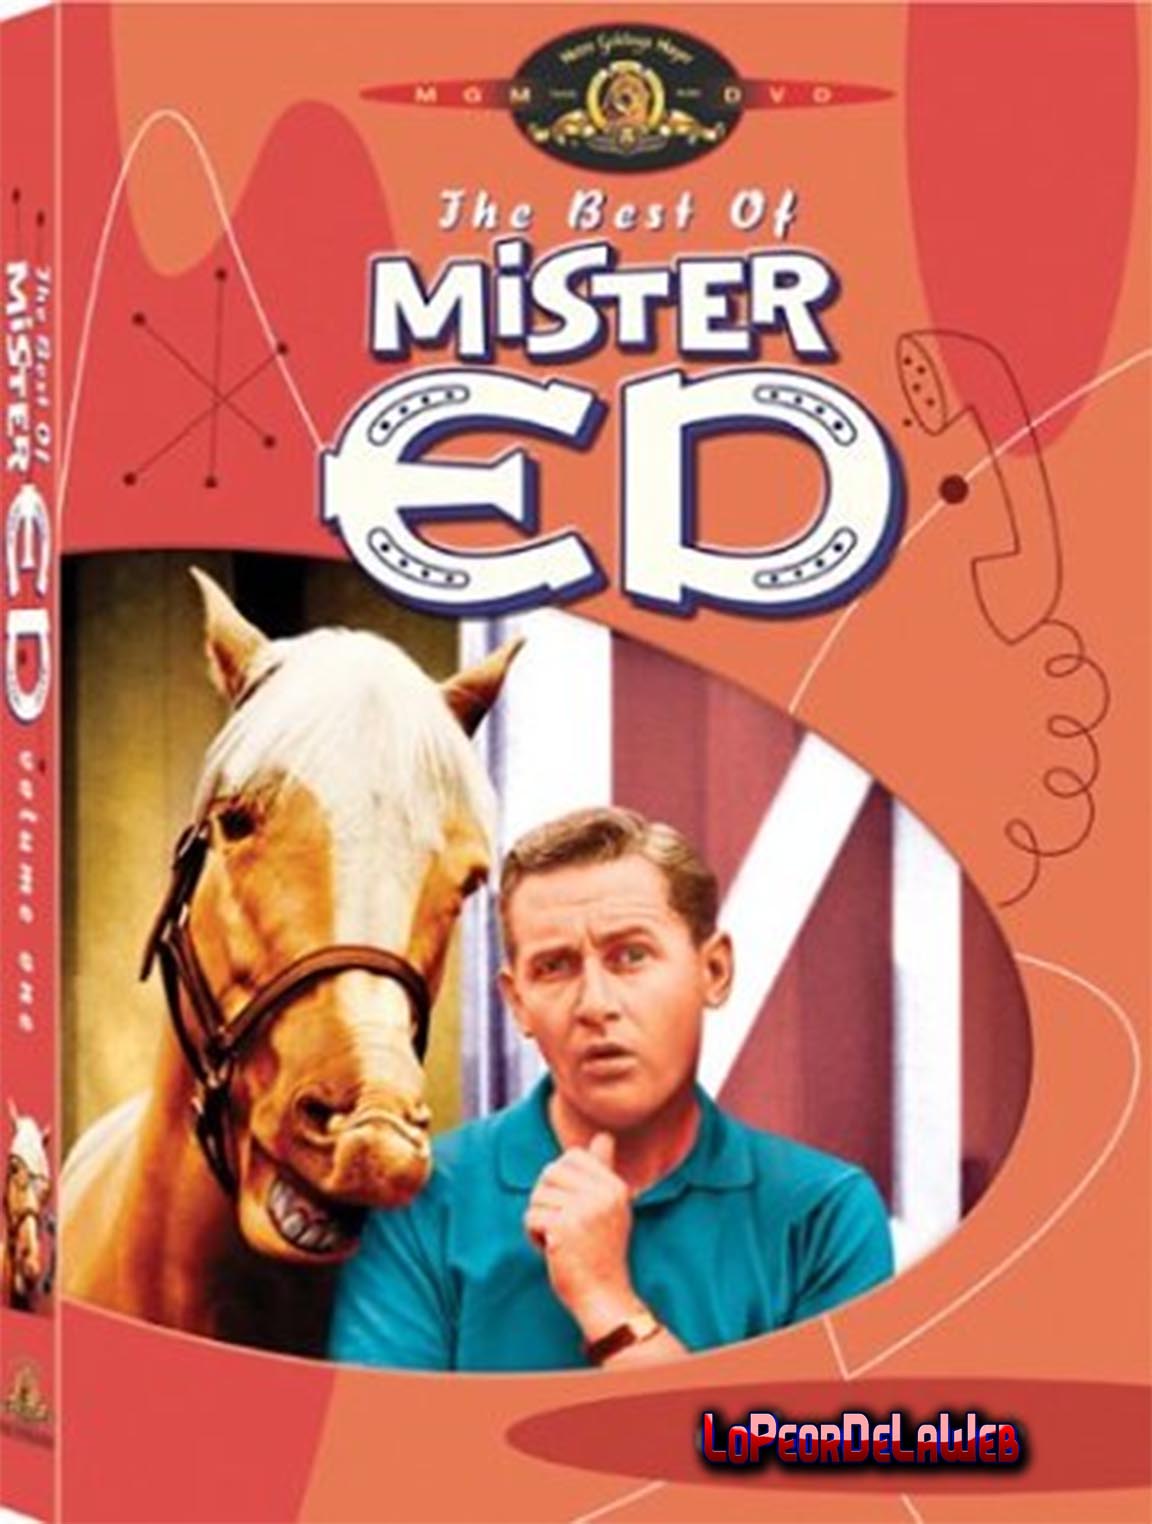 Mister Ed, el Caballo que Habla (1961 - Episodios 1 al 10)